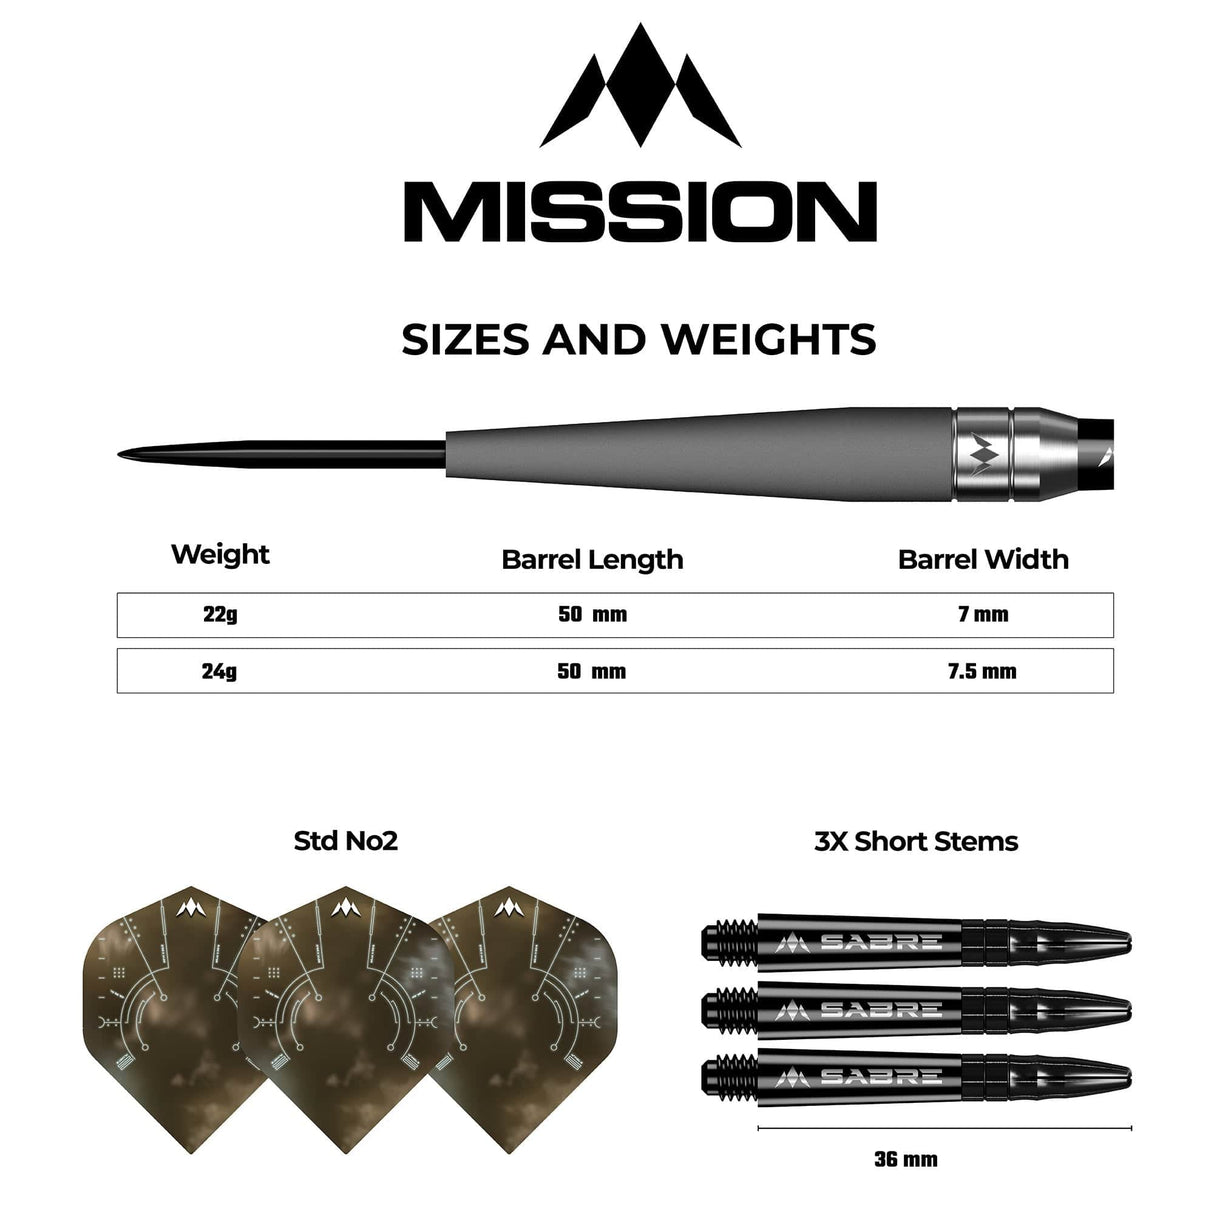 Mission Saturn Darts - Steel Tip - 90% Tungsten - Titan